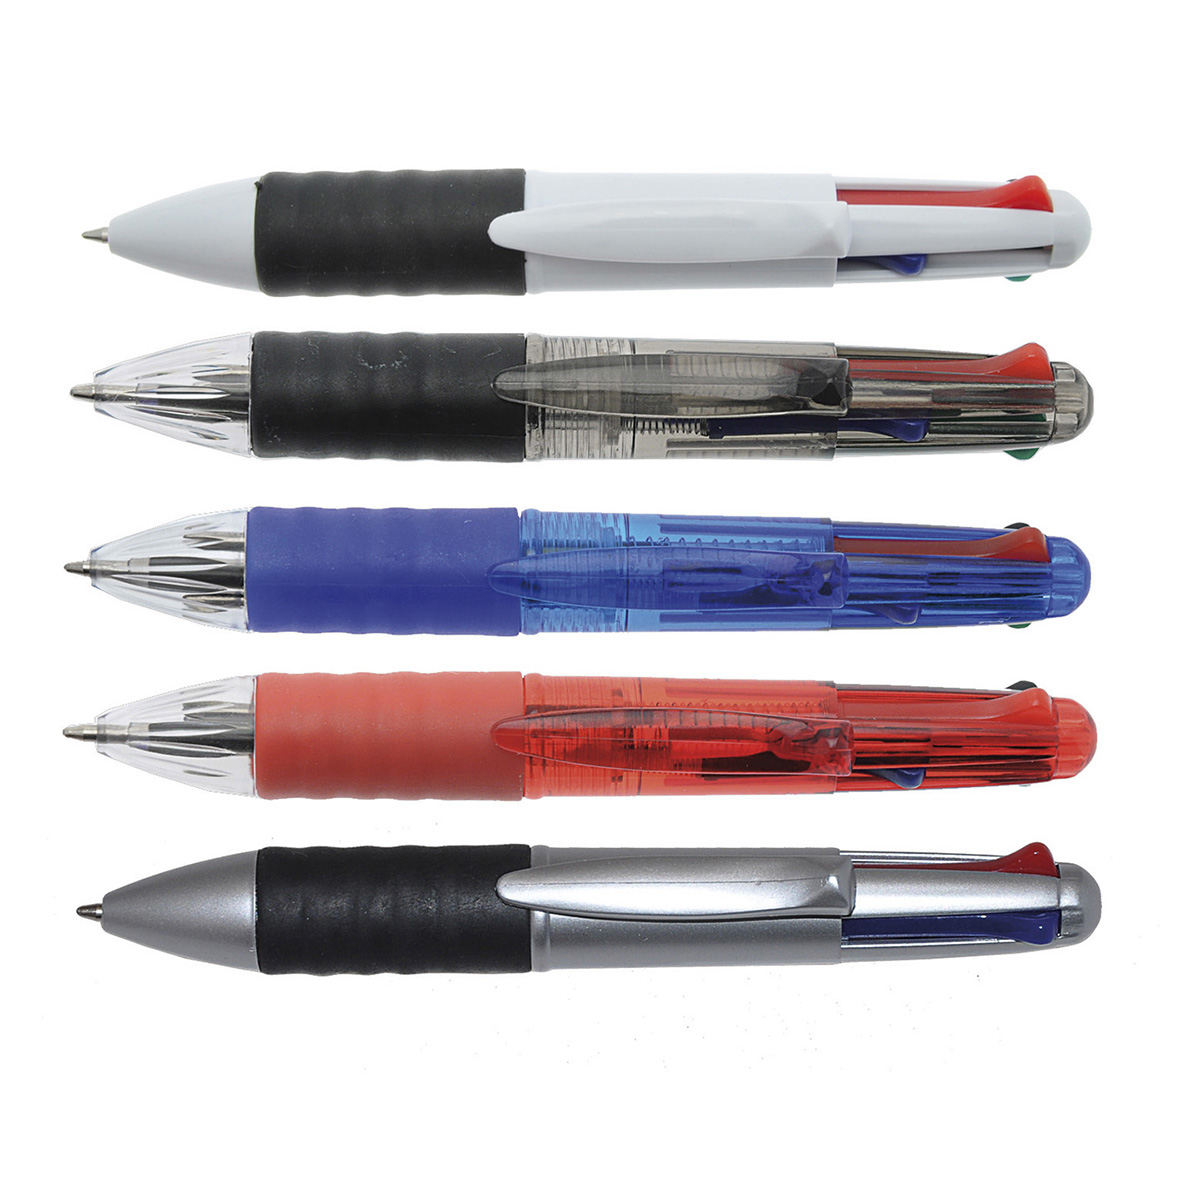 Stylo bille publicitaire quatre couleurs cote1004 - Multimines - stylo multifonction